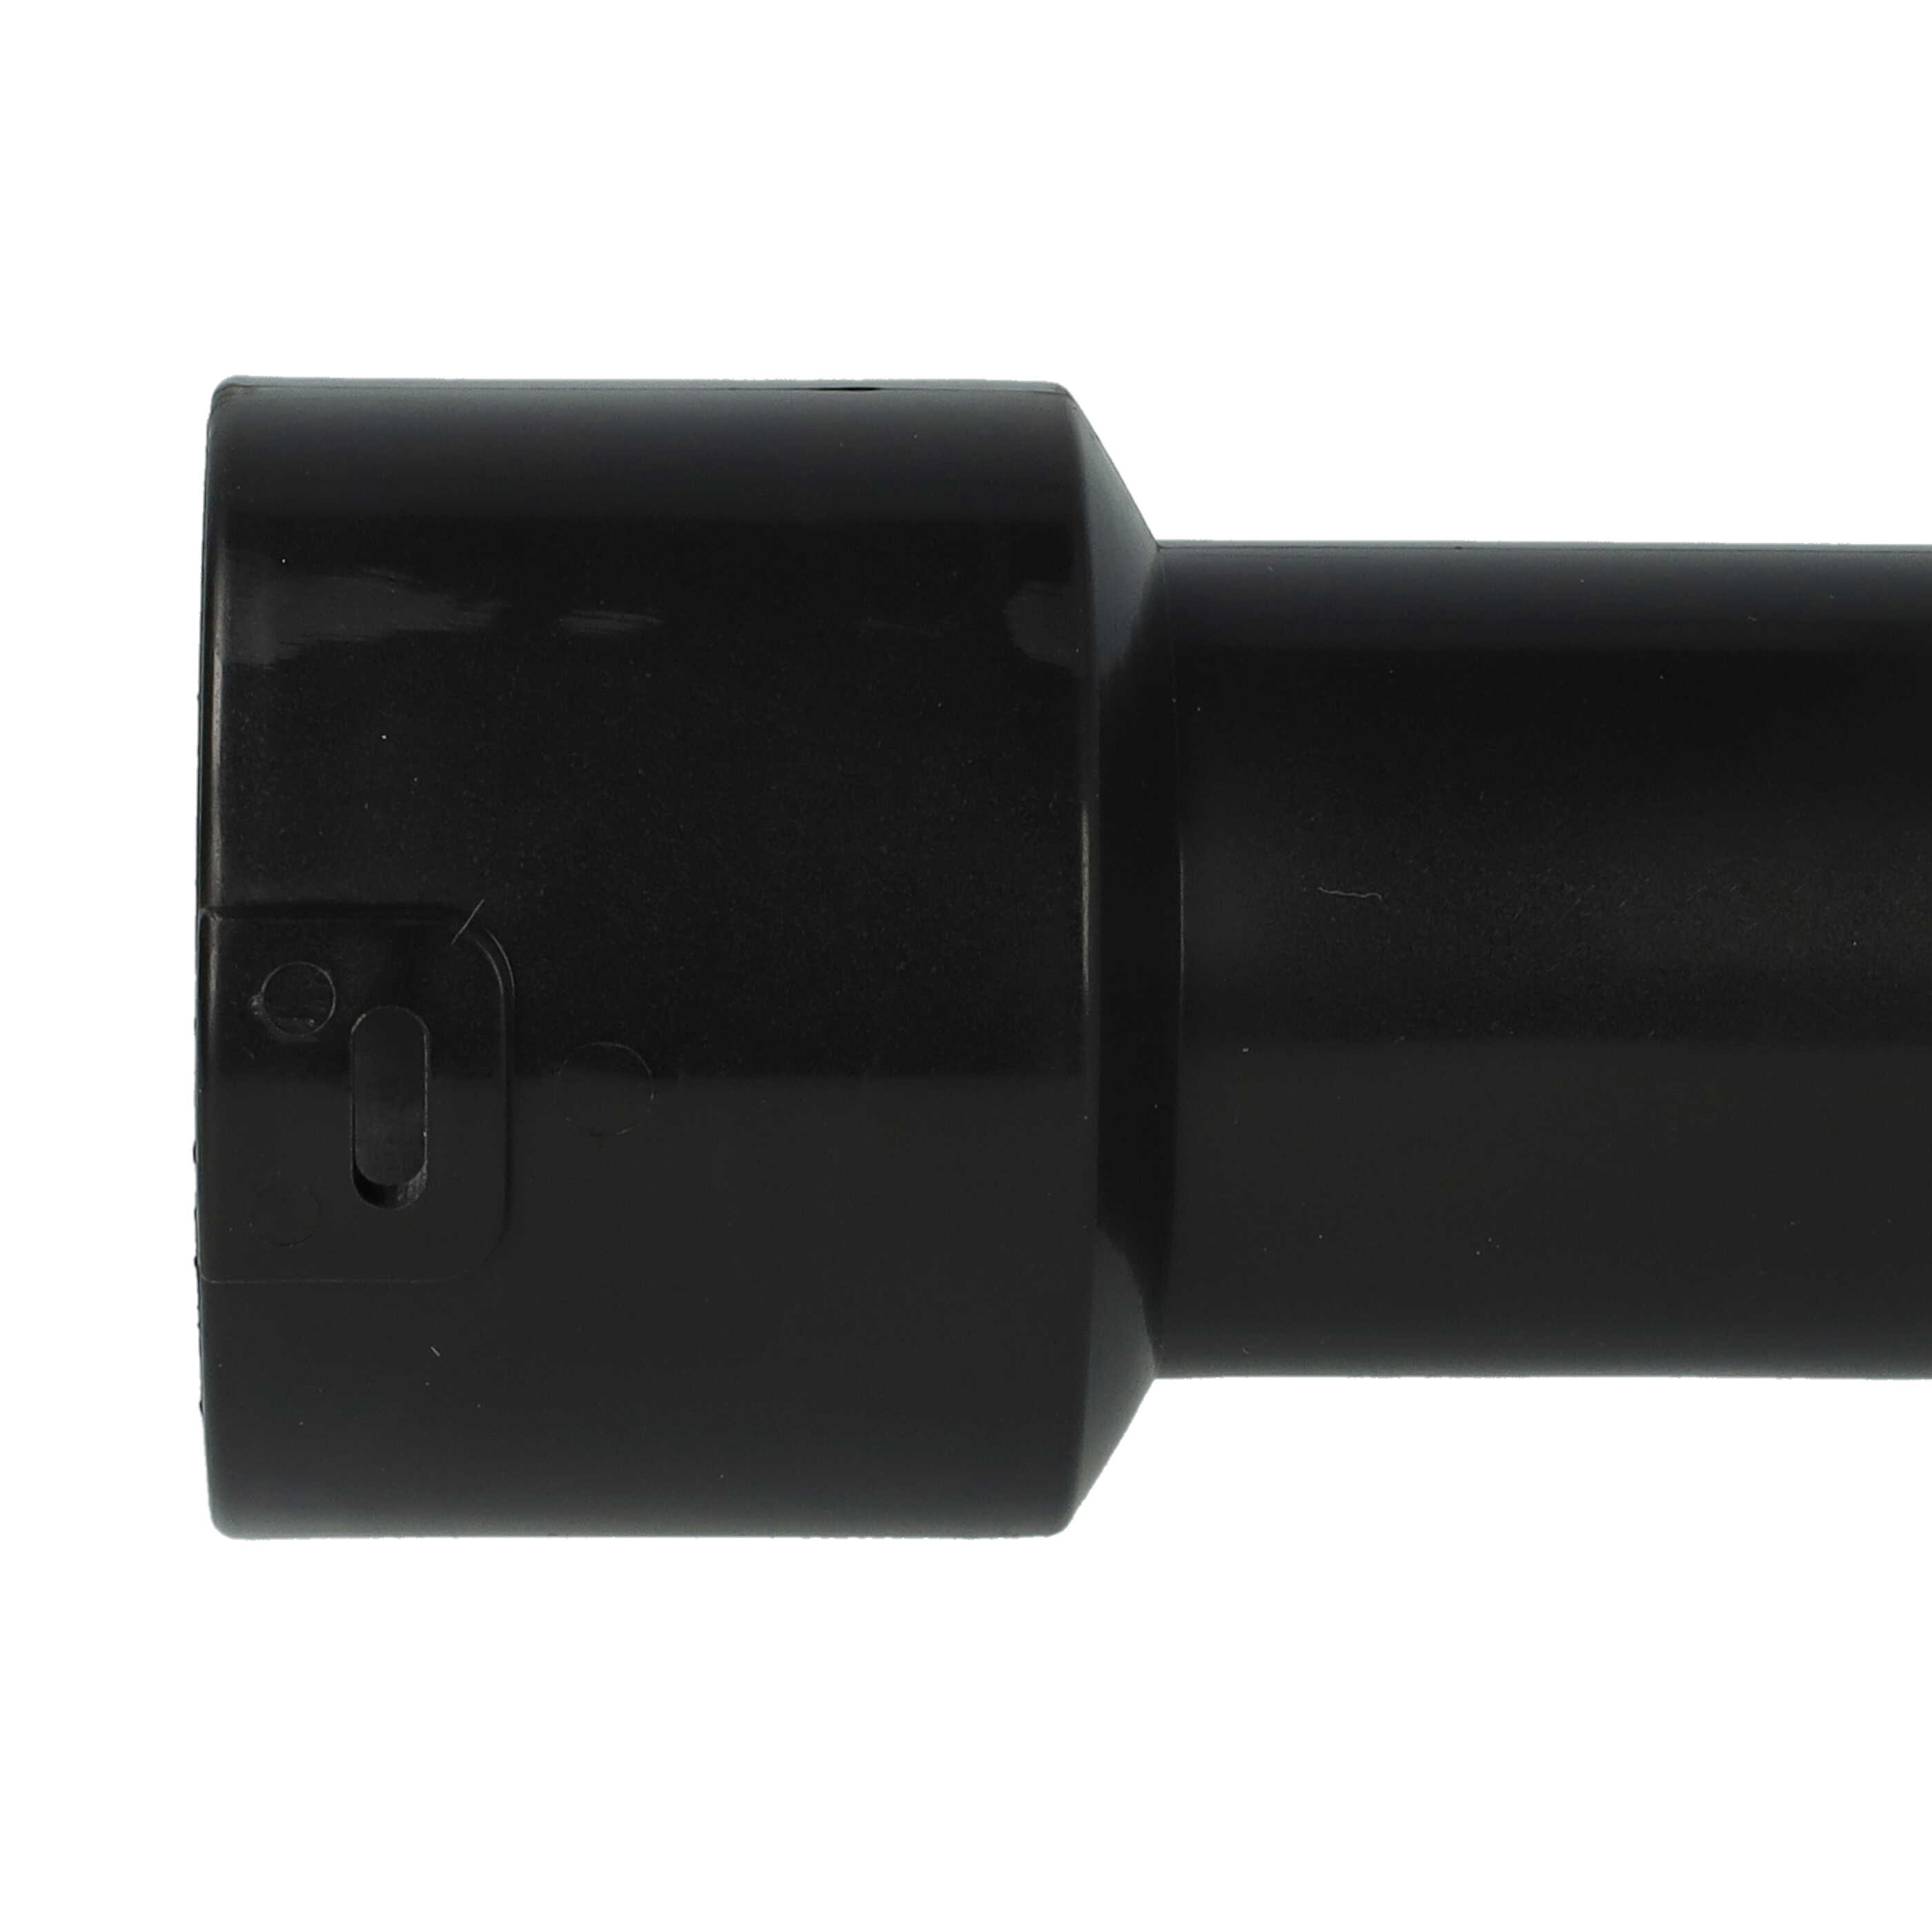 Adaptador de manguera para NBV190/1 Numatic aspiradoras - 32 mm conector redondo, sistema clic